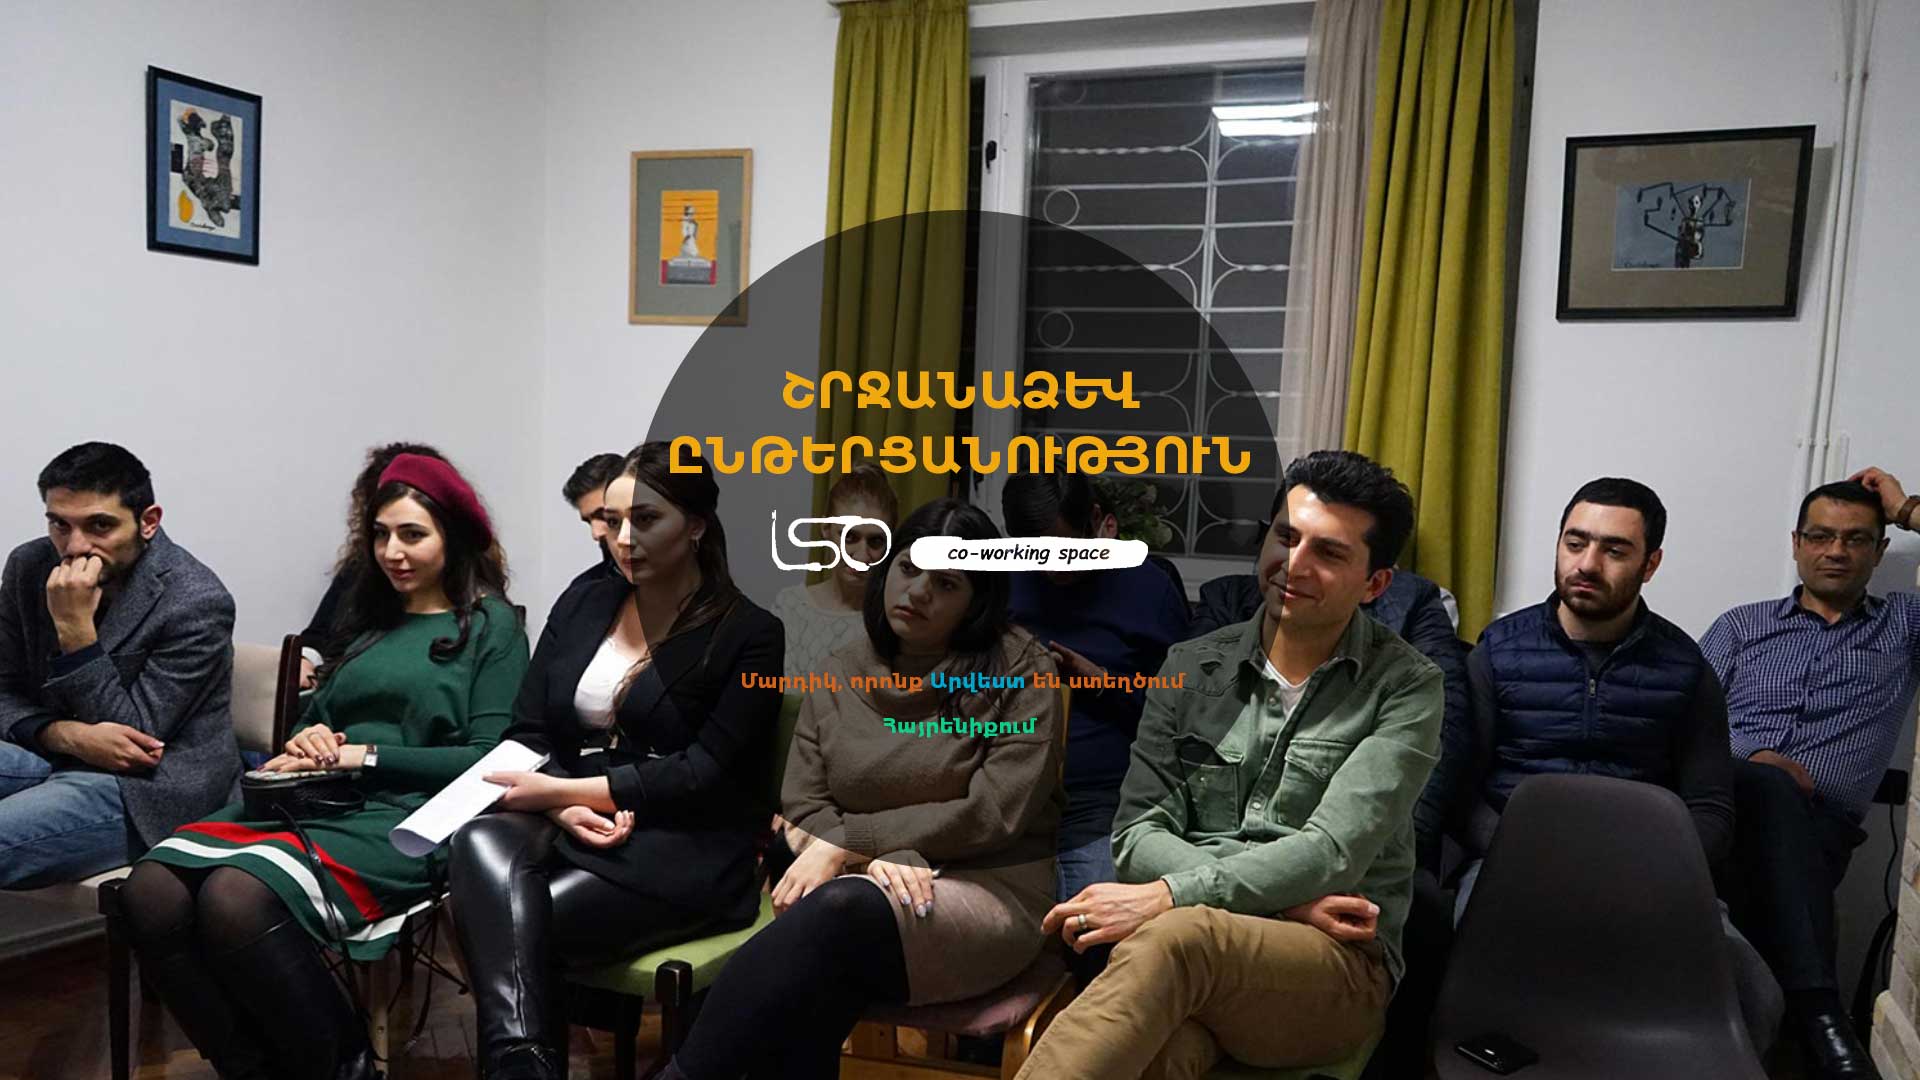 Շրջանաձև ընթերցանություն. Yerevan Coworking-ը հյուրընկալեց գրողներին